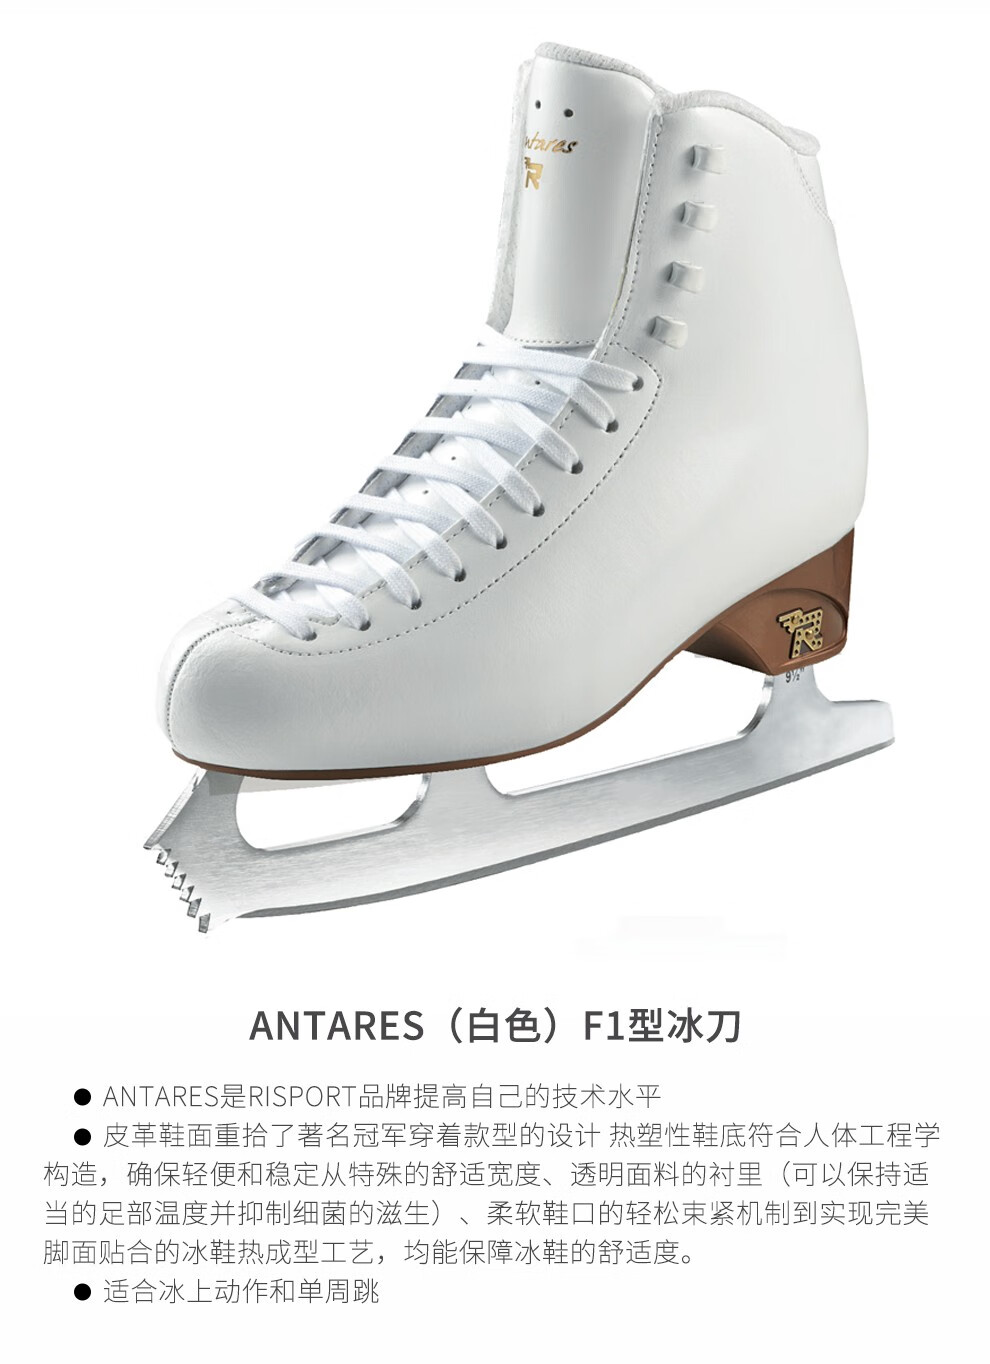 冰上运动意大利品牌risport花样滑冰鞋初学者儿童女成人专业真冰鞋